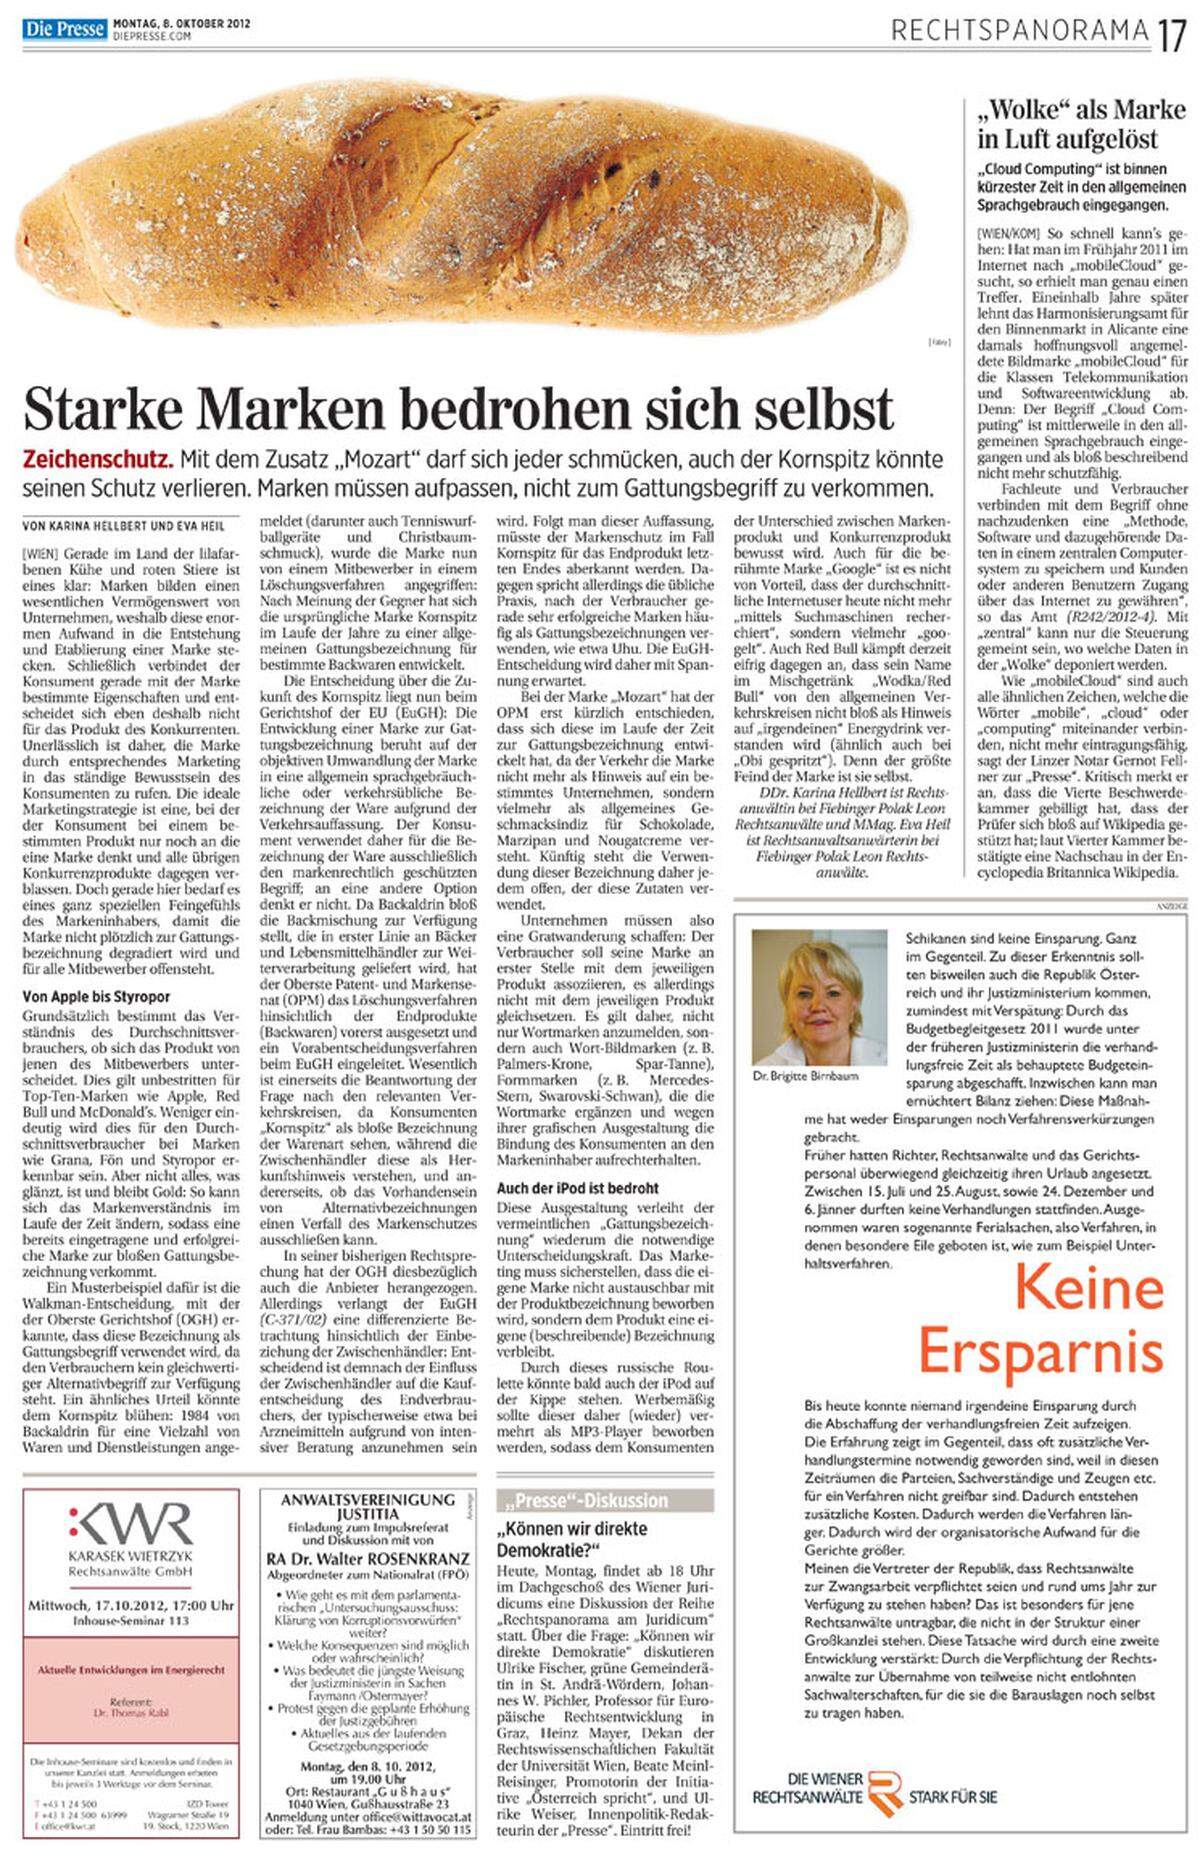 8. Oktober 2012: Die Gastautorinnen Katharina Hellbert und Eva Heil ahnen bereits, dass "Kornspitz" zu einer Gattungsbezeichnung geworden sein könnte. Merke: "Starke Marken bedrohen sich selbst."